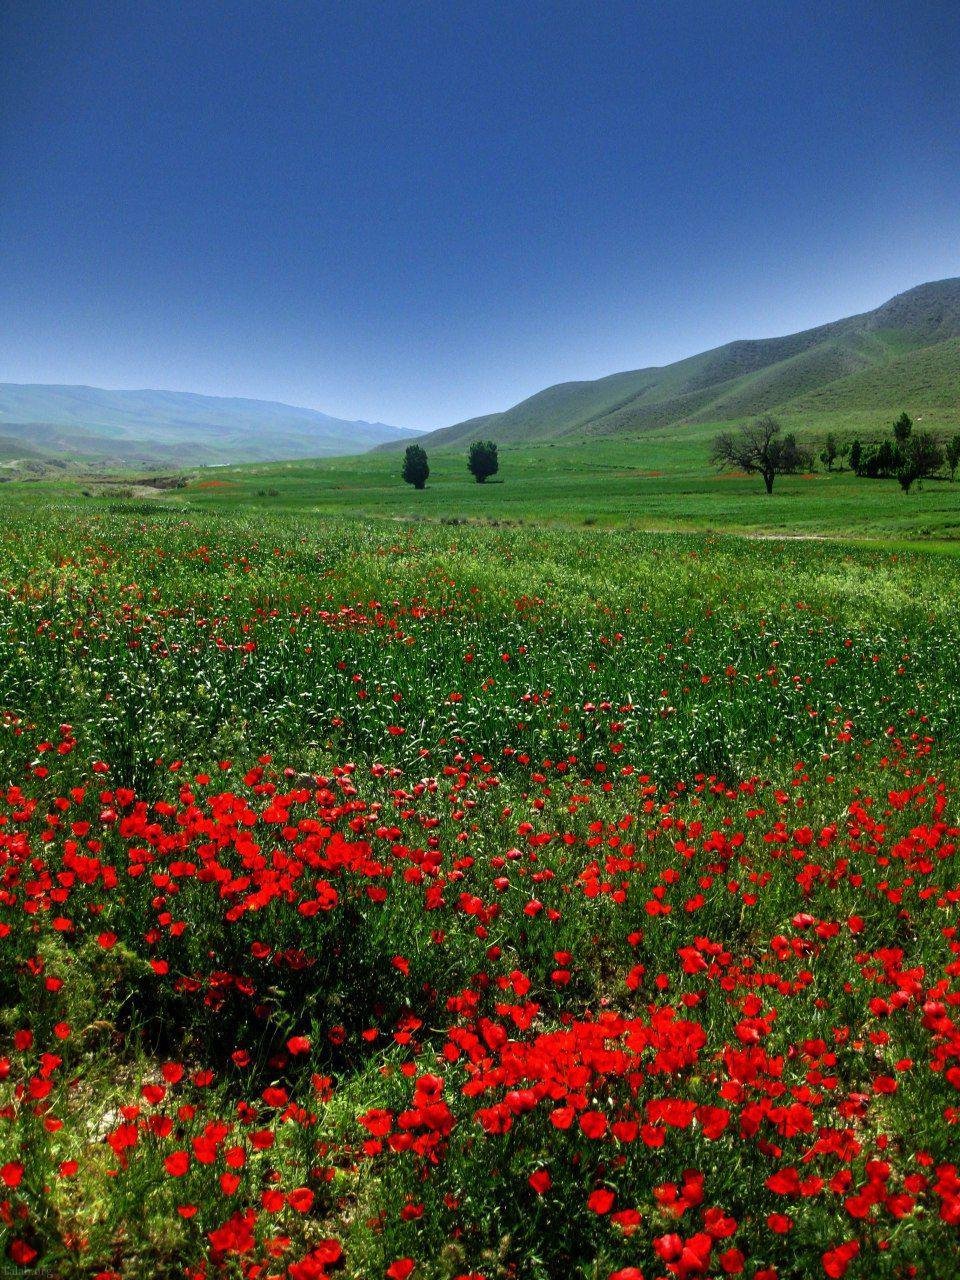 عکس طبیعت ایران با کیفیت hd